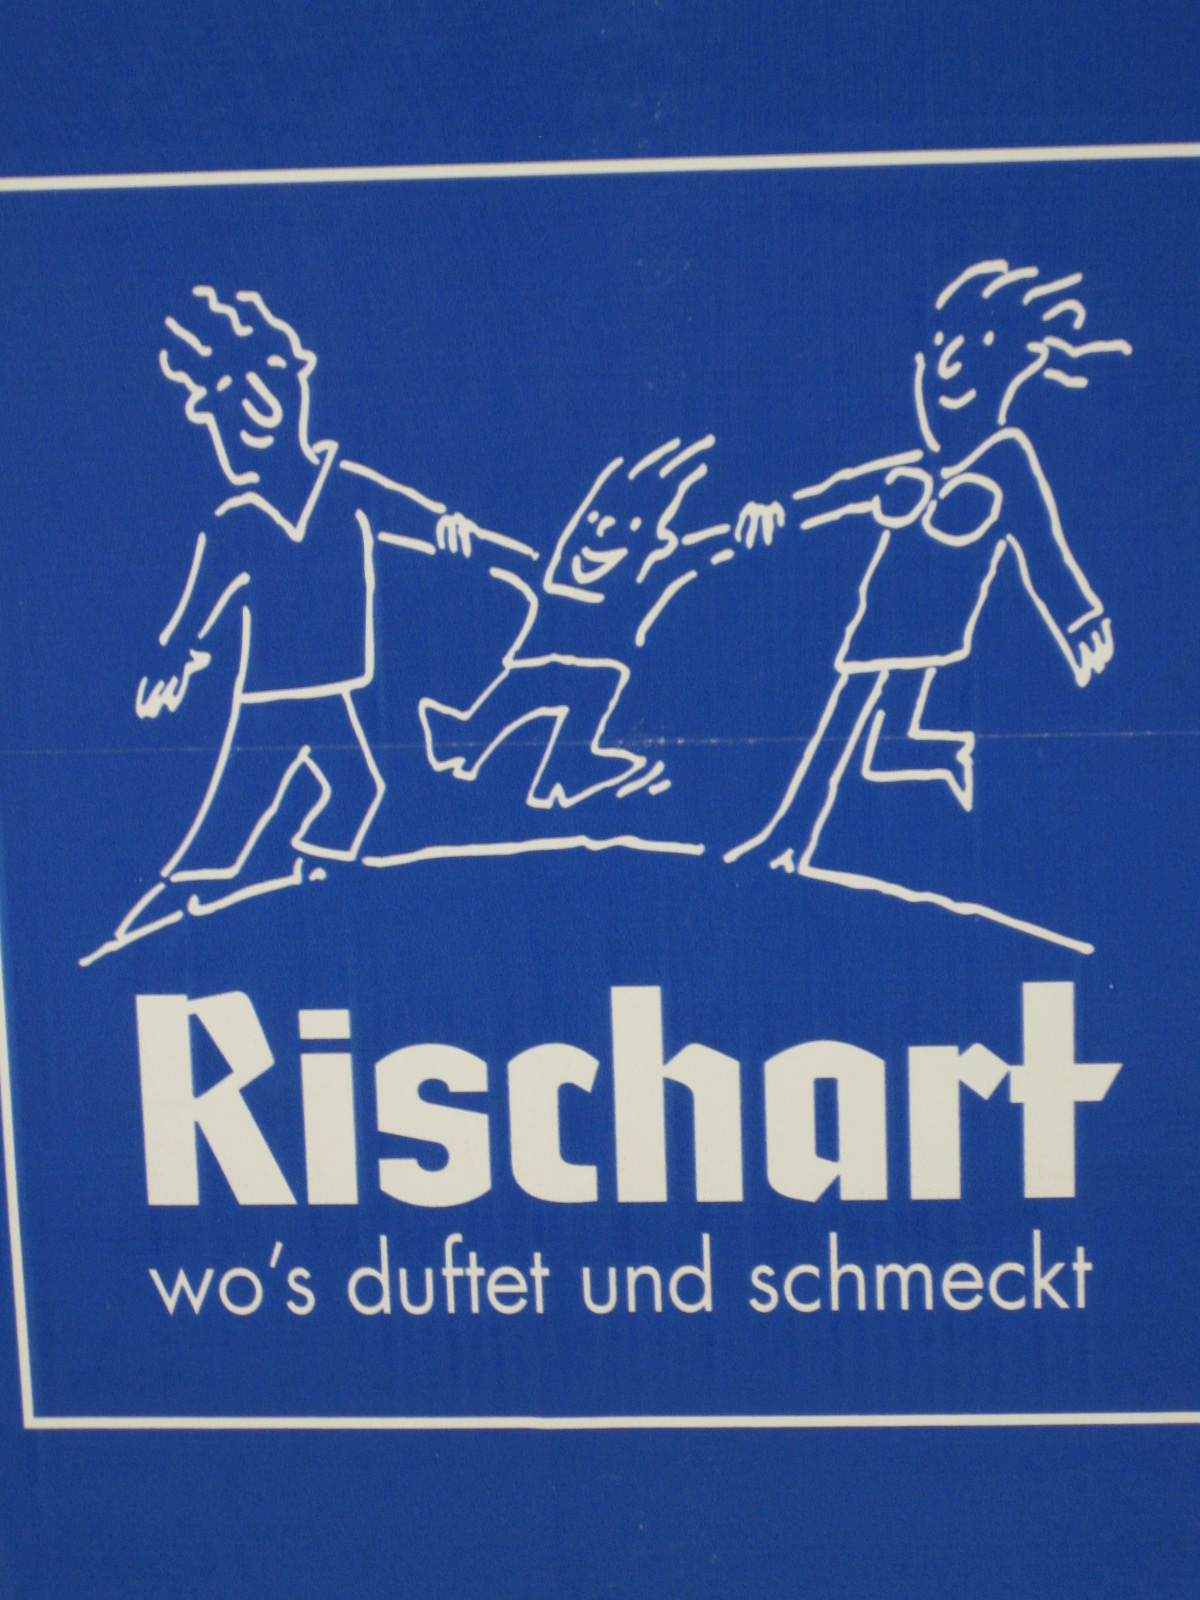 Rischart's Backhaus